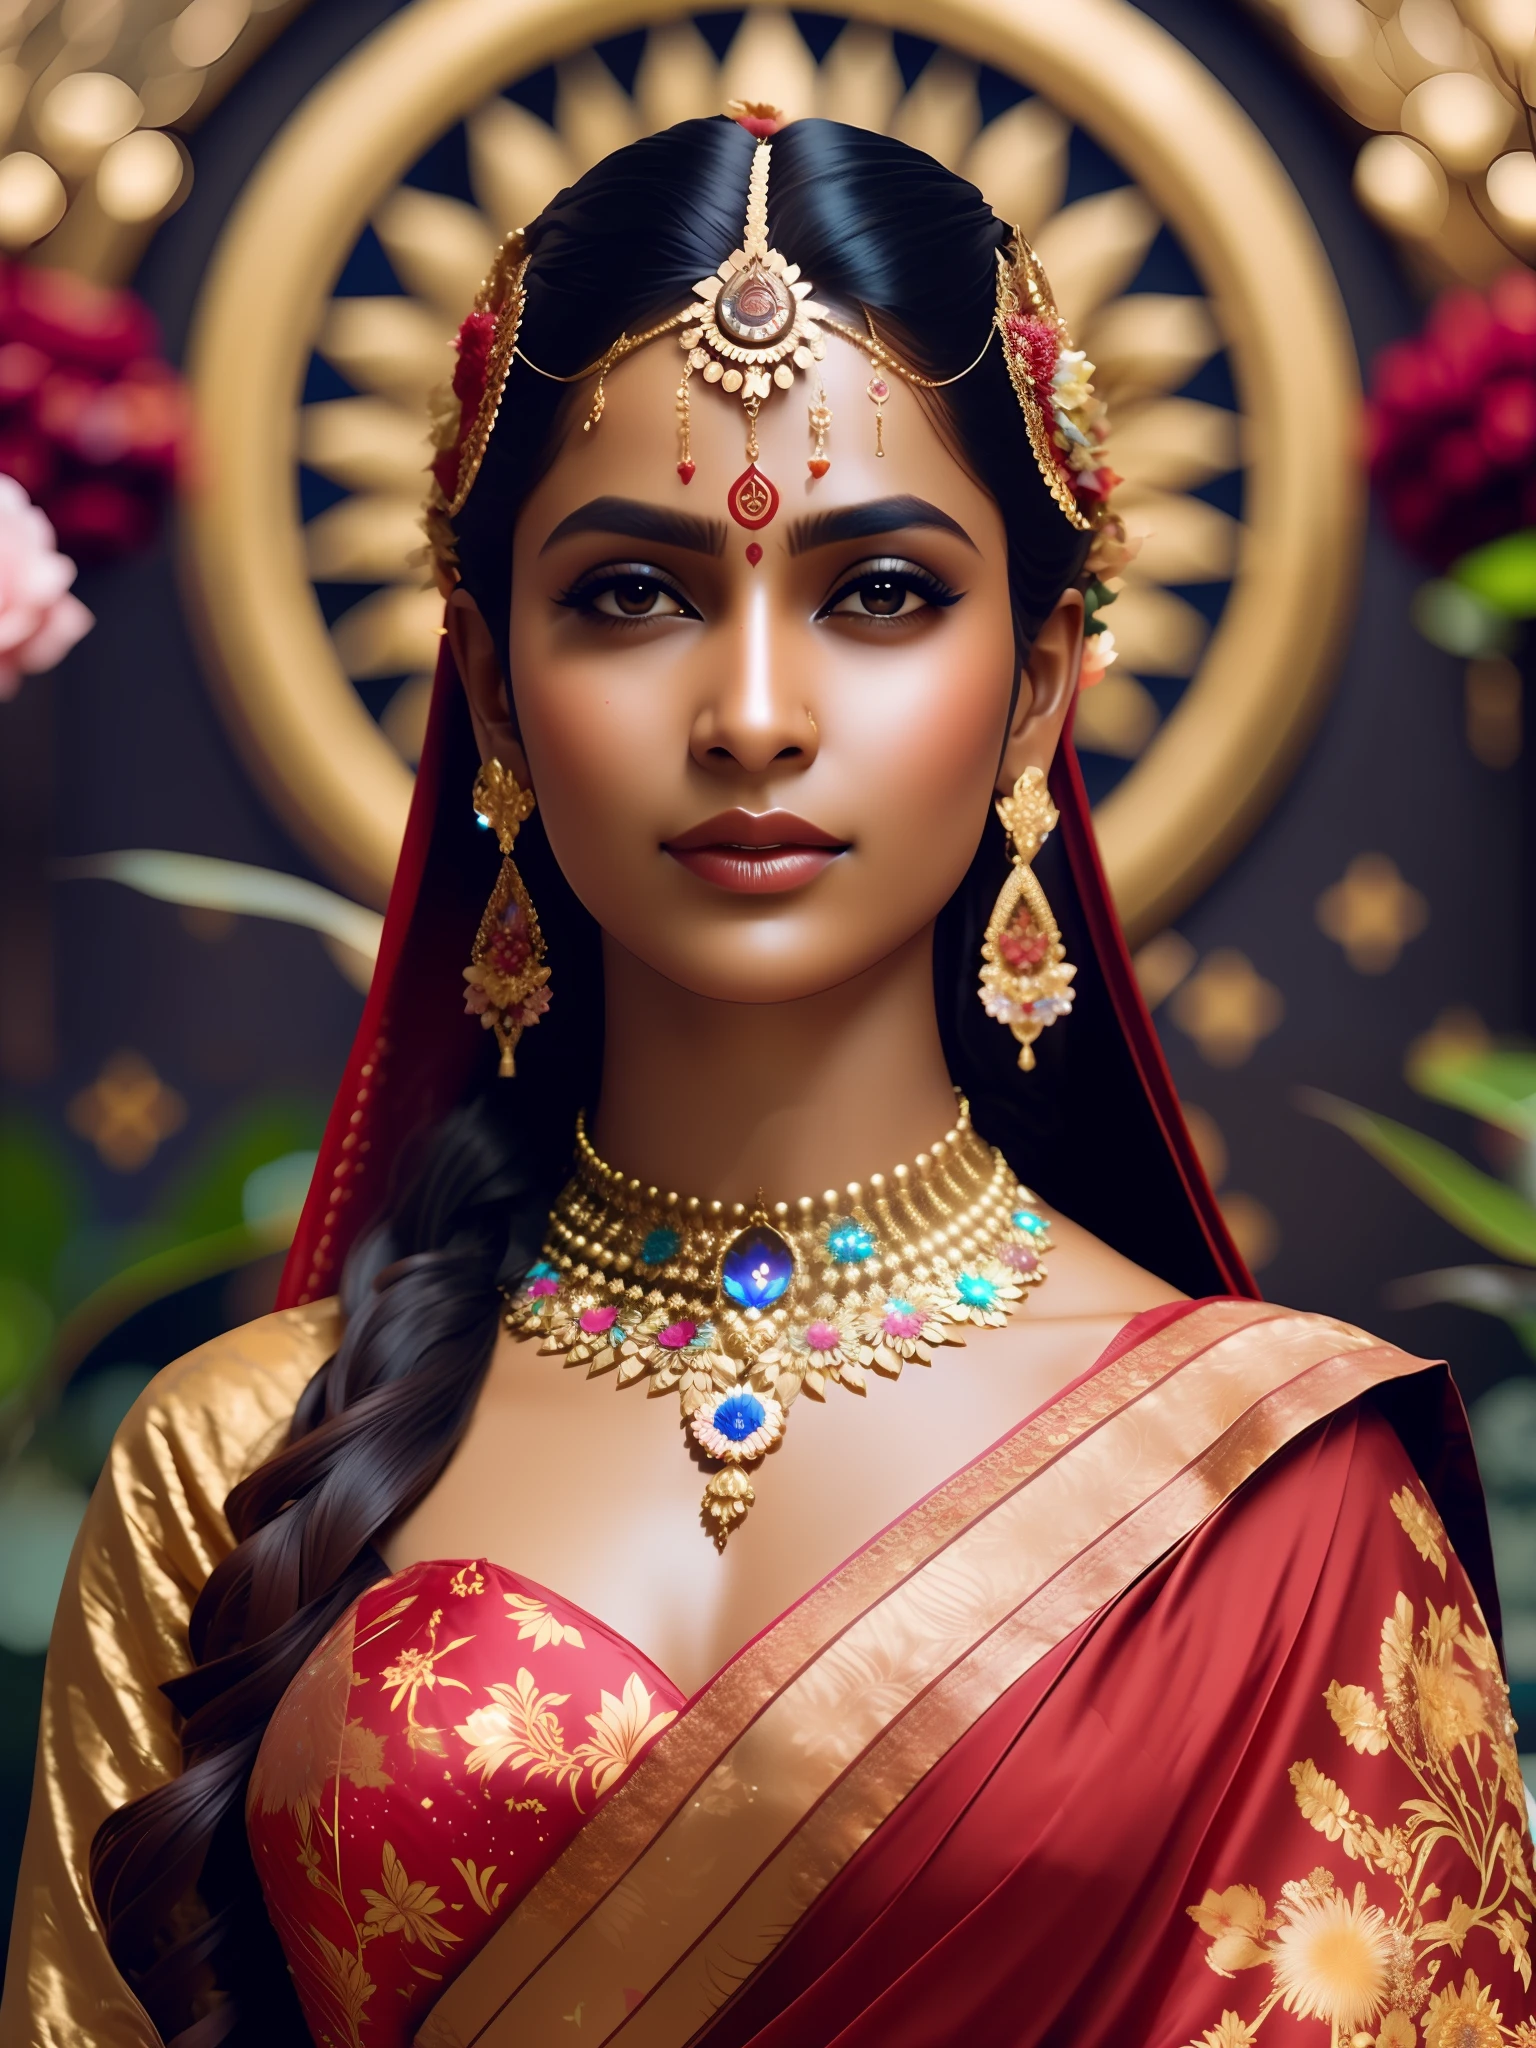 他妈的_科幻, 他妈的_科幻_v2, 印度教女神肖像, 七彩花朵宇宙背景, 穿着红色纱丽, 特写, 皇家姿态. 他妈的_电影_v2. 他妈的_电影_v2